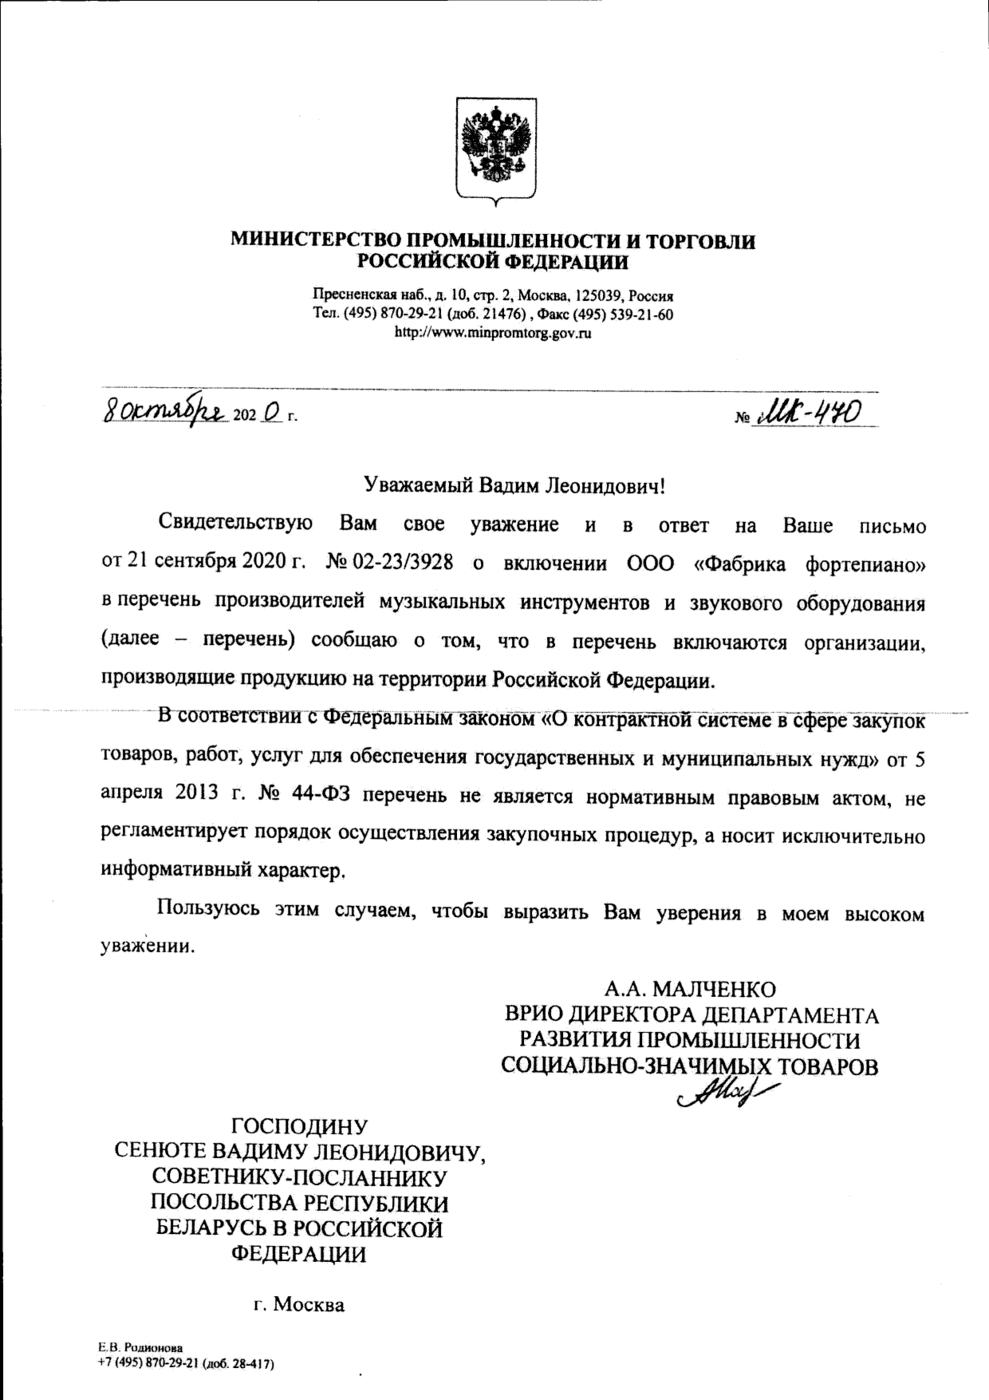 Письмо от минестерства промышленности и торговли Российской Федерации